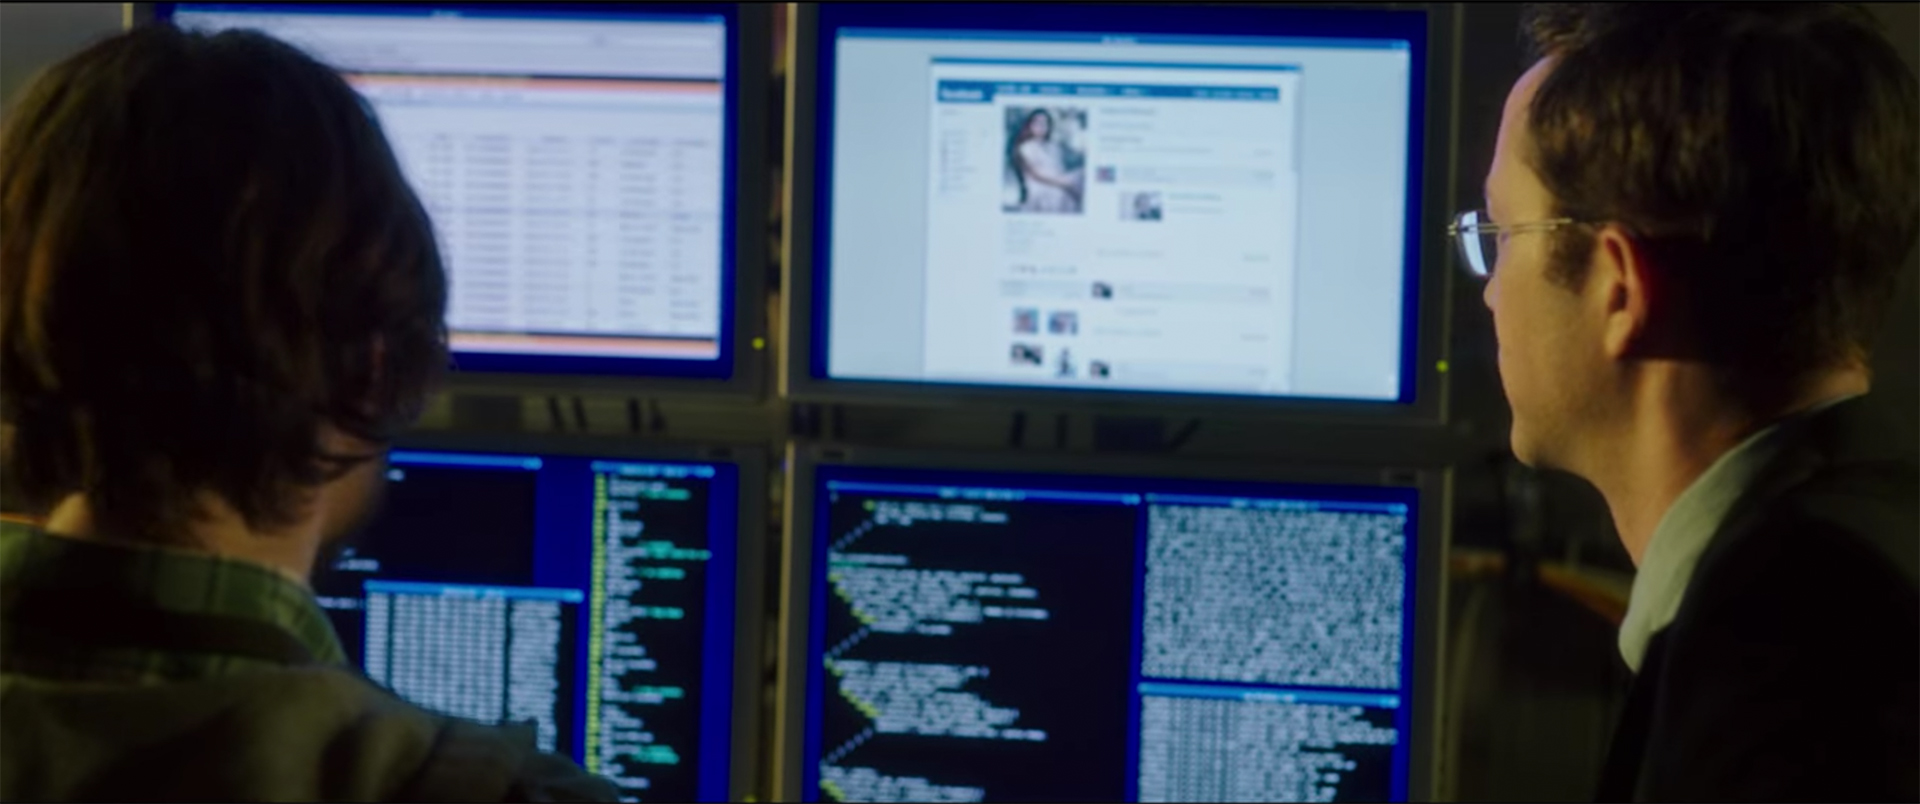 Snowden und ein Arbeitskollege blicken auf eine Wand voller Monitore